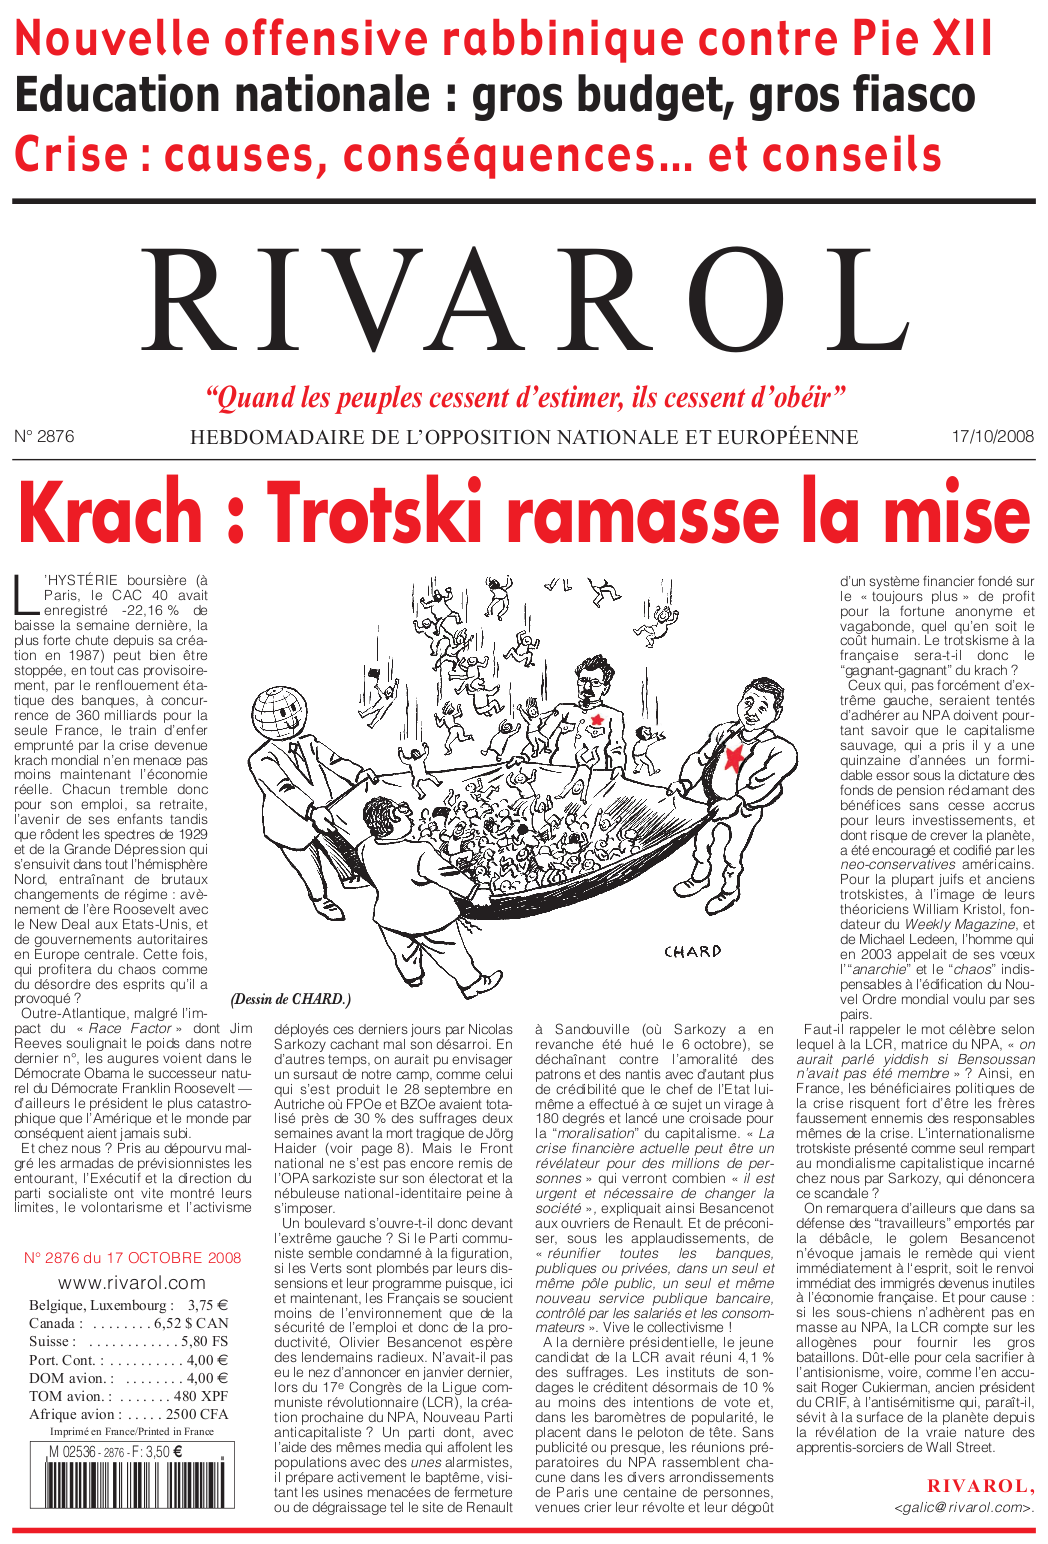 Rivarol n°2876 version numérique (PDF)